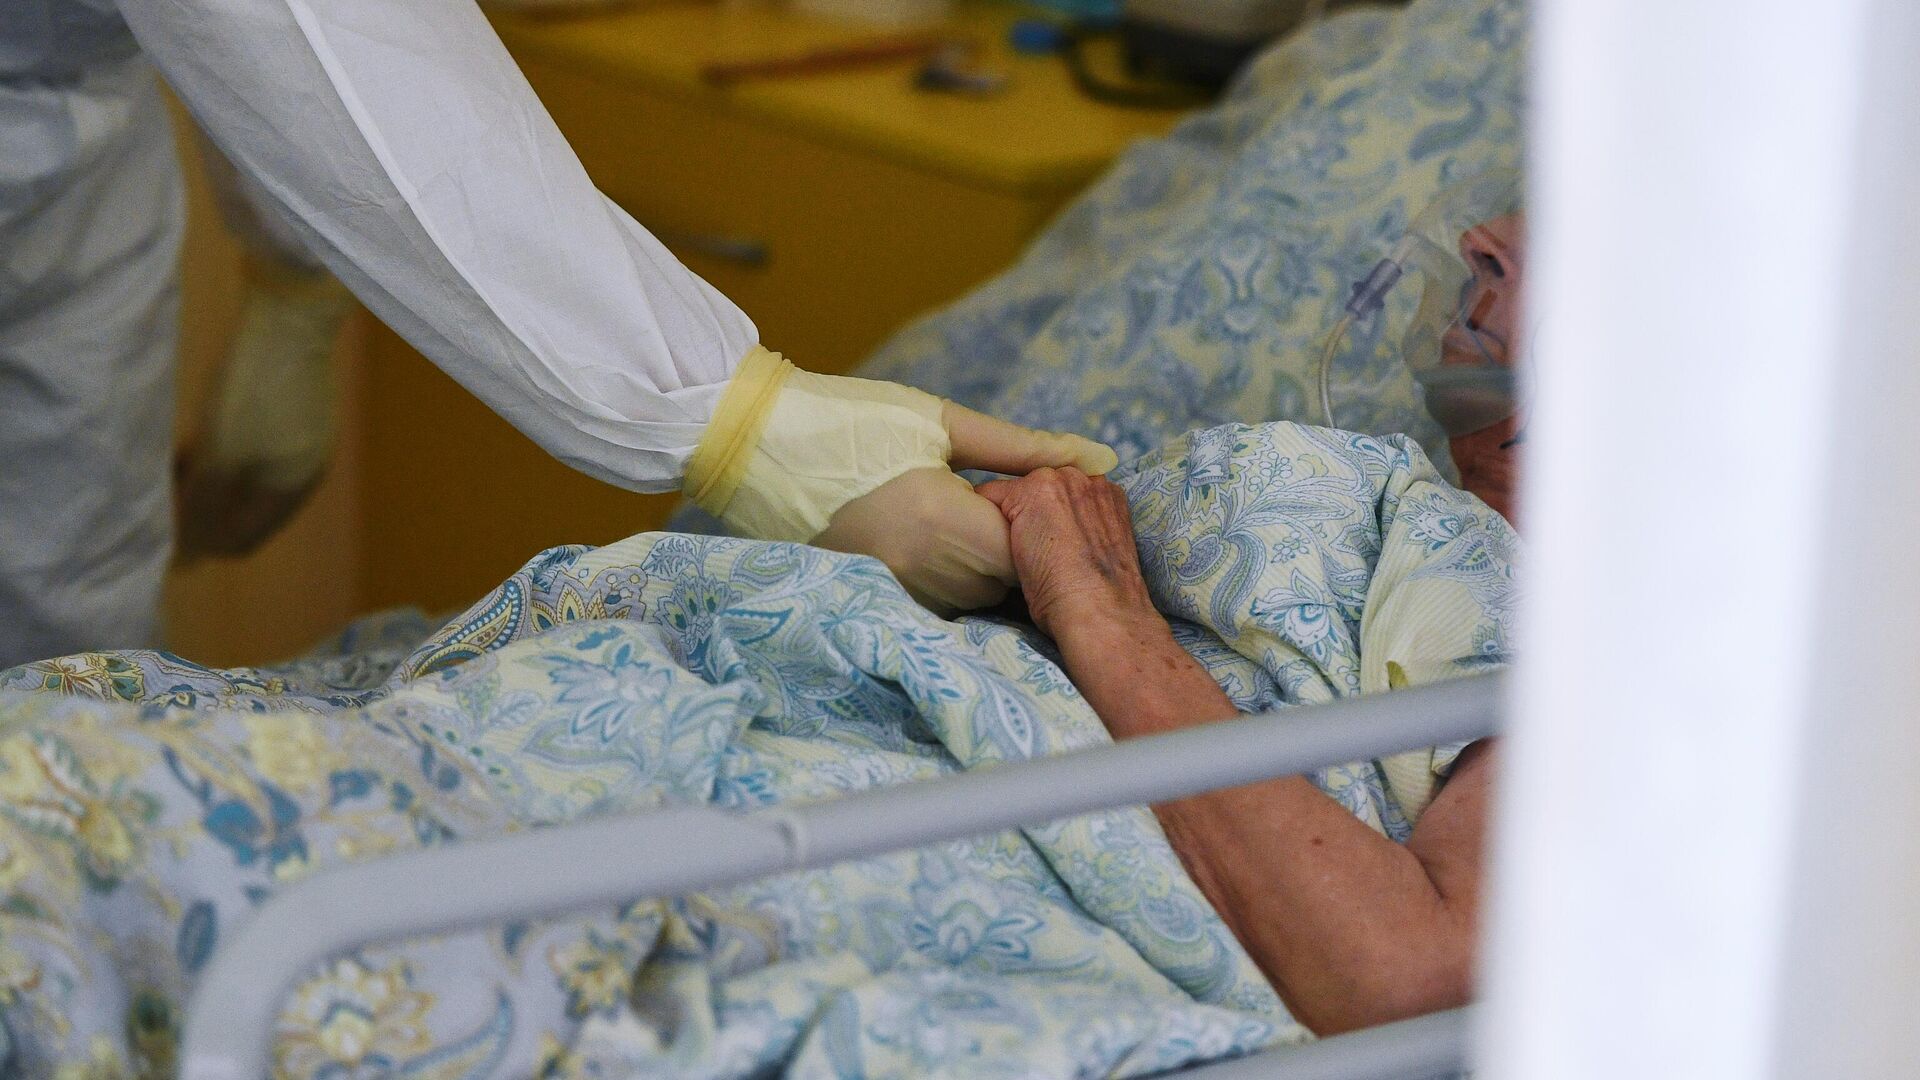 Медицинский работник возле кровати пациента в одном из отделений госпиталя COVID-19 в Центре мозга и нейротехнологий ФМБА России - РИА Новости, 1920, 19.10.2020